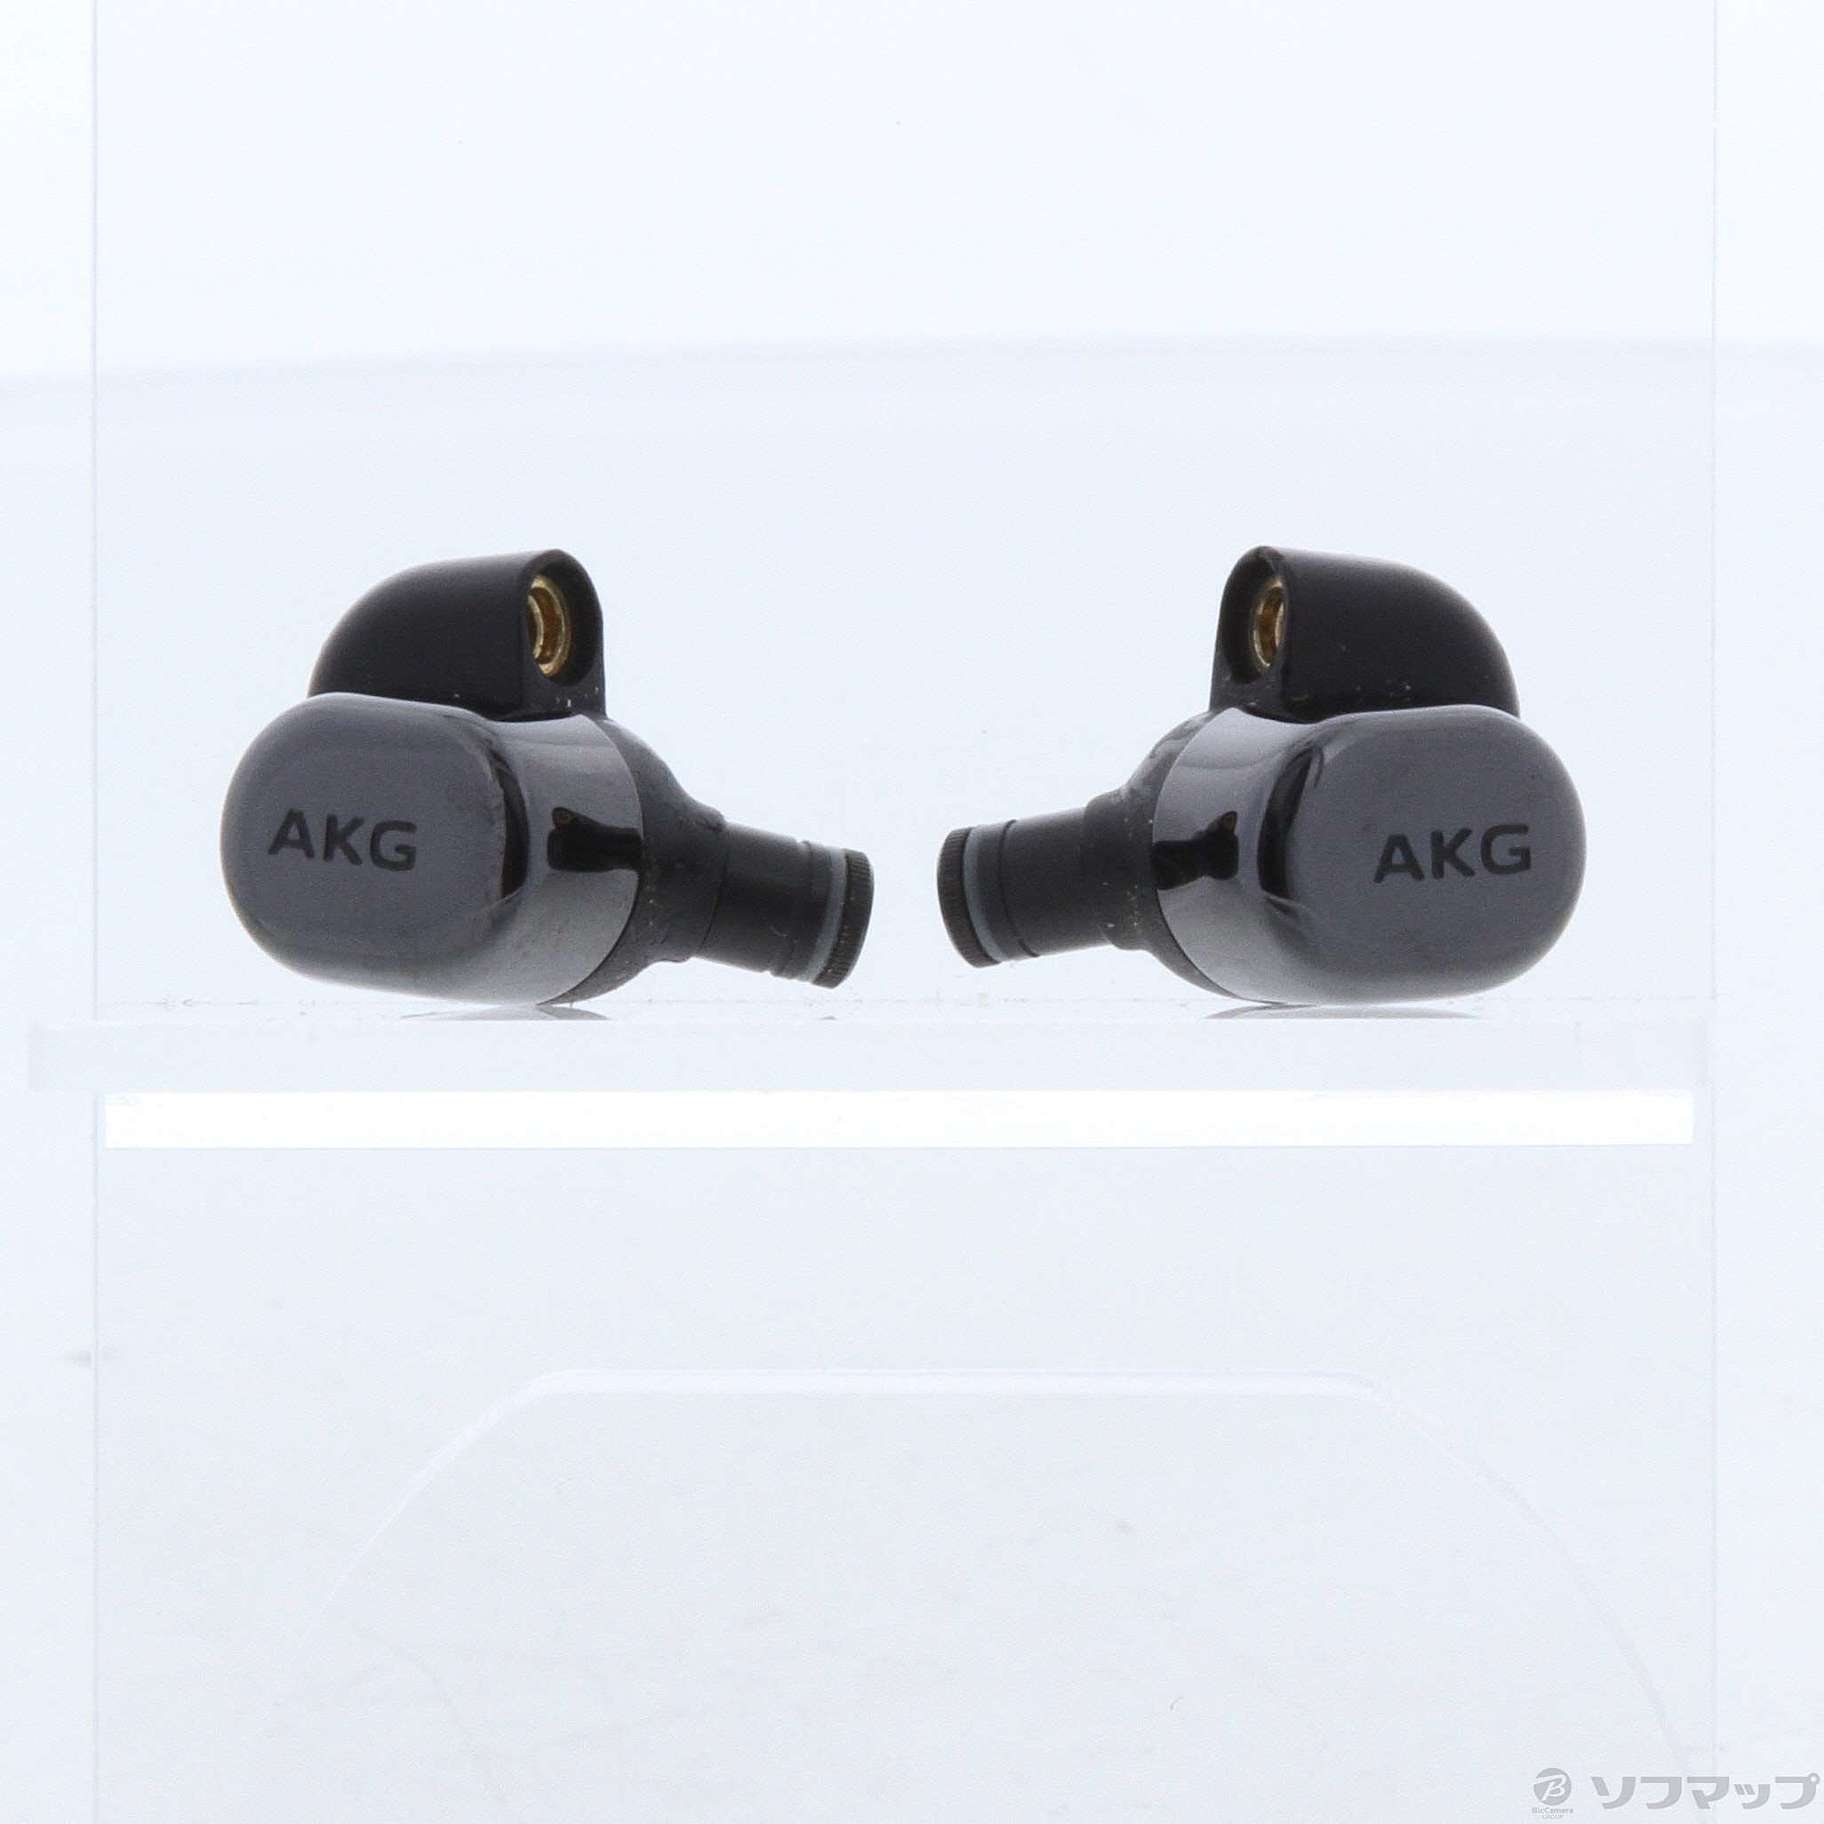 AKG N5005